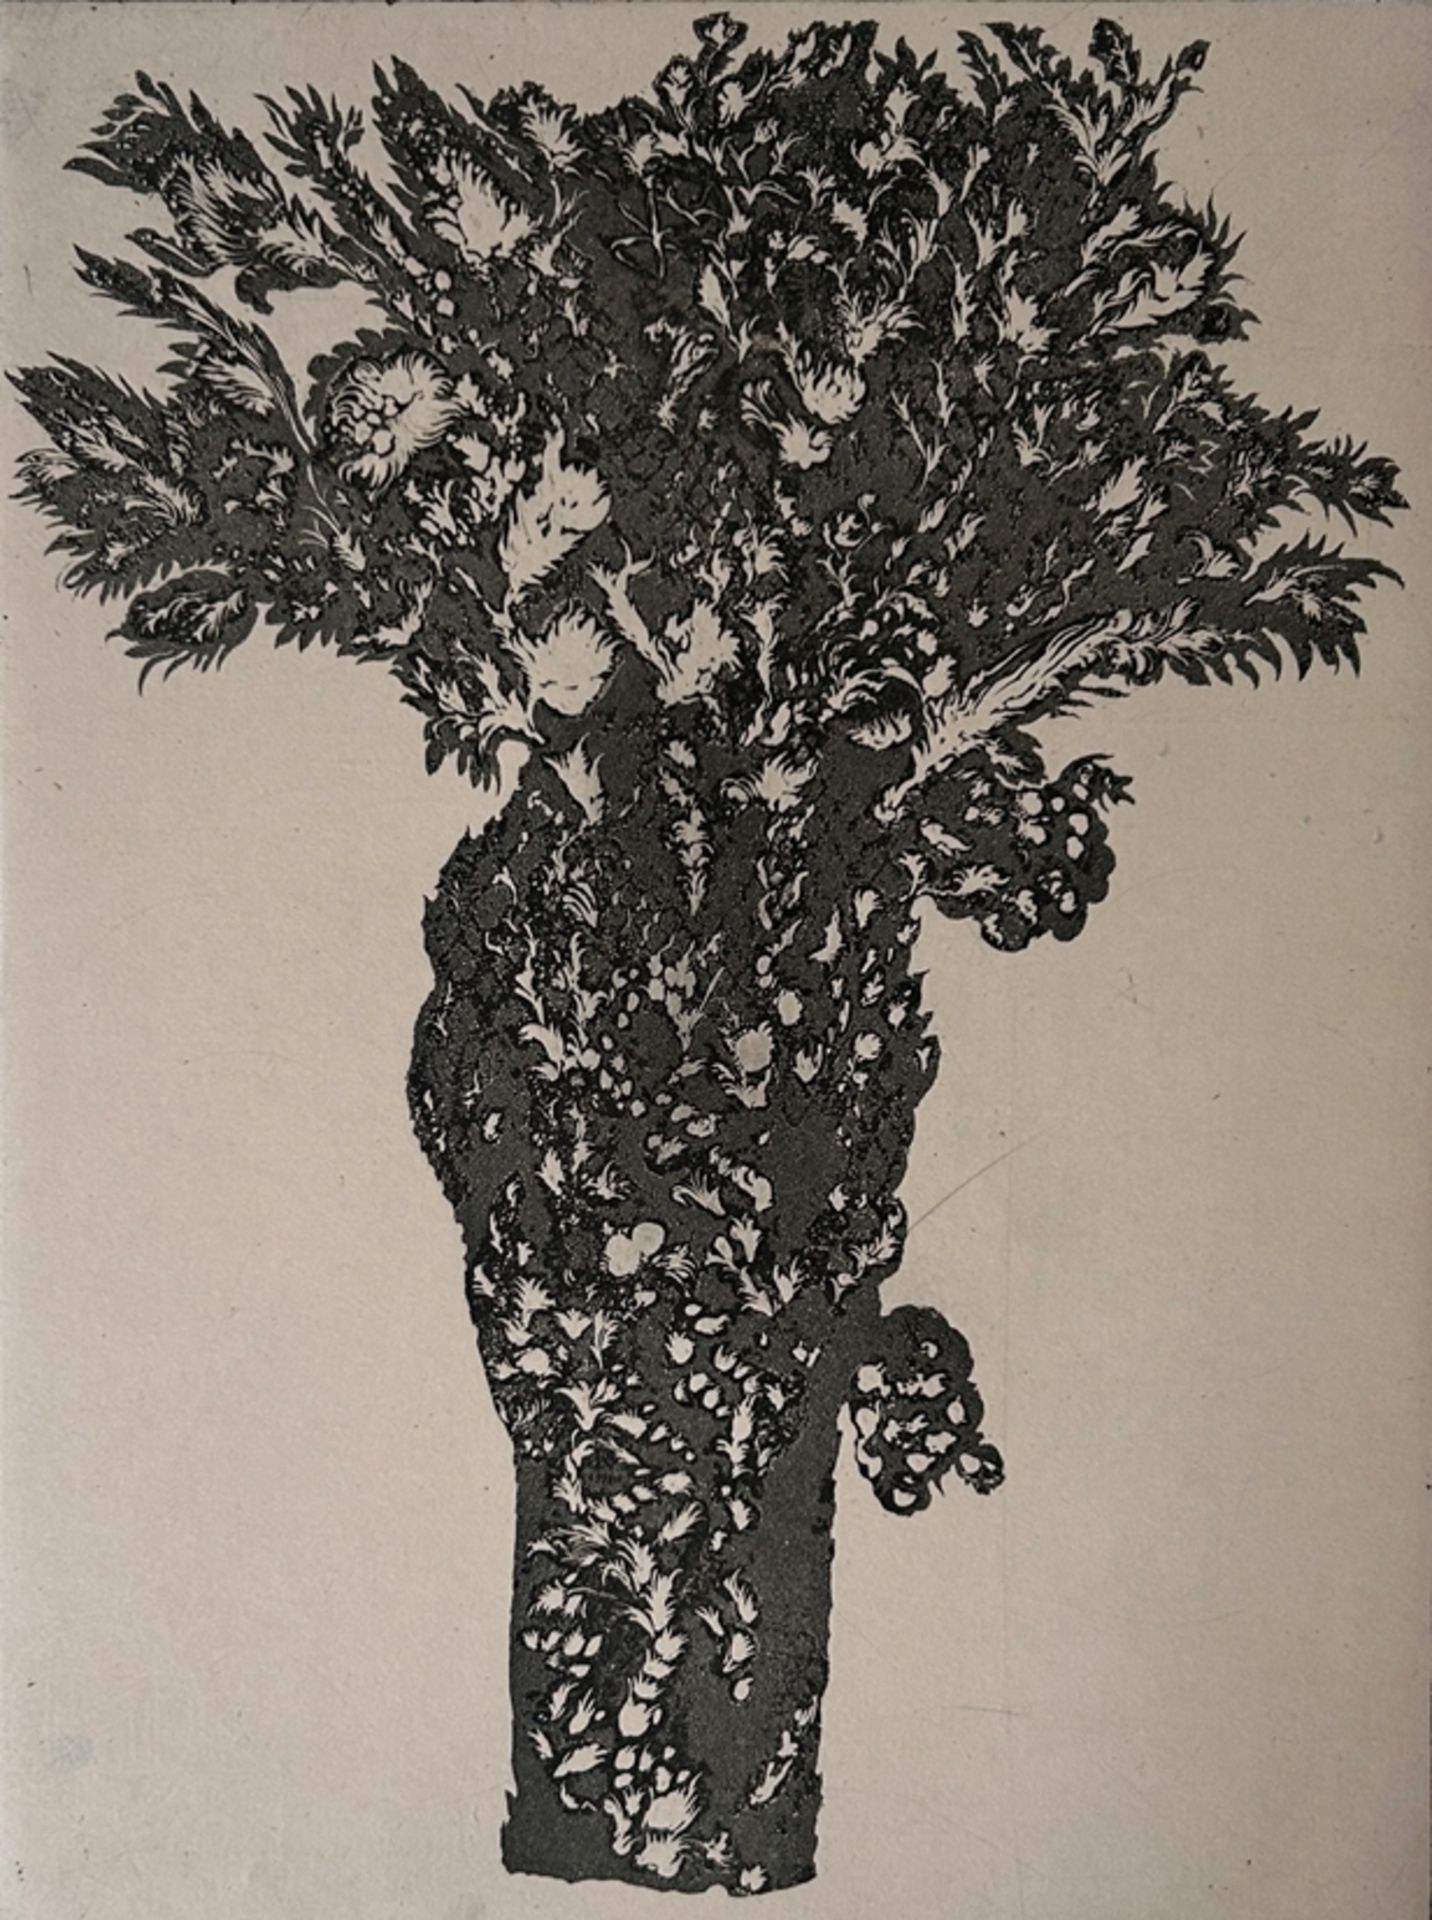 Fuchs, Ernst (1930-Wien-2015) - "Lilith hinter dem Baum der Erkenntnis", 1975, Radierung auf Papier